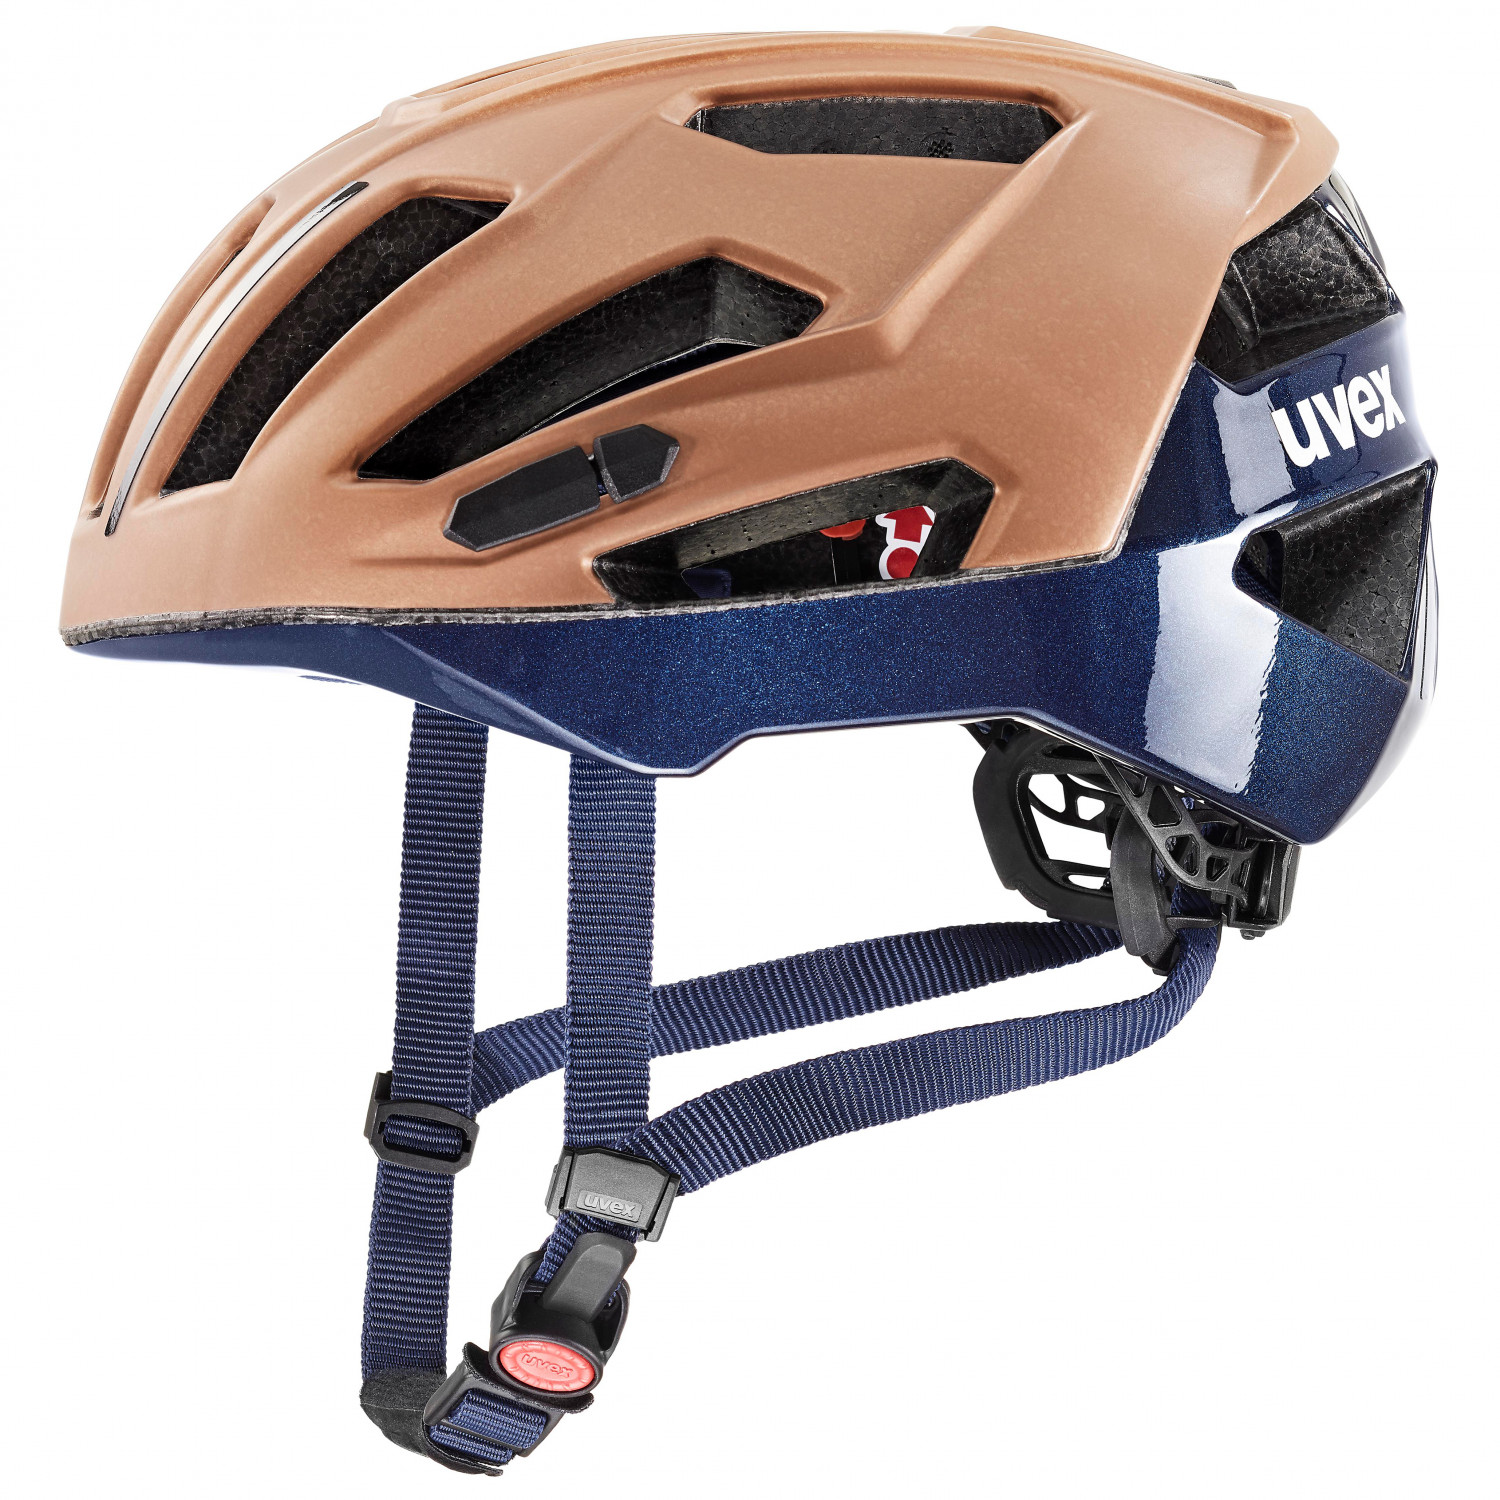 Велосипедный шлем Uvex Gravel X, цвет Hazel/Deep Space Matt